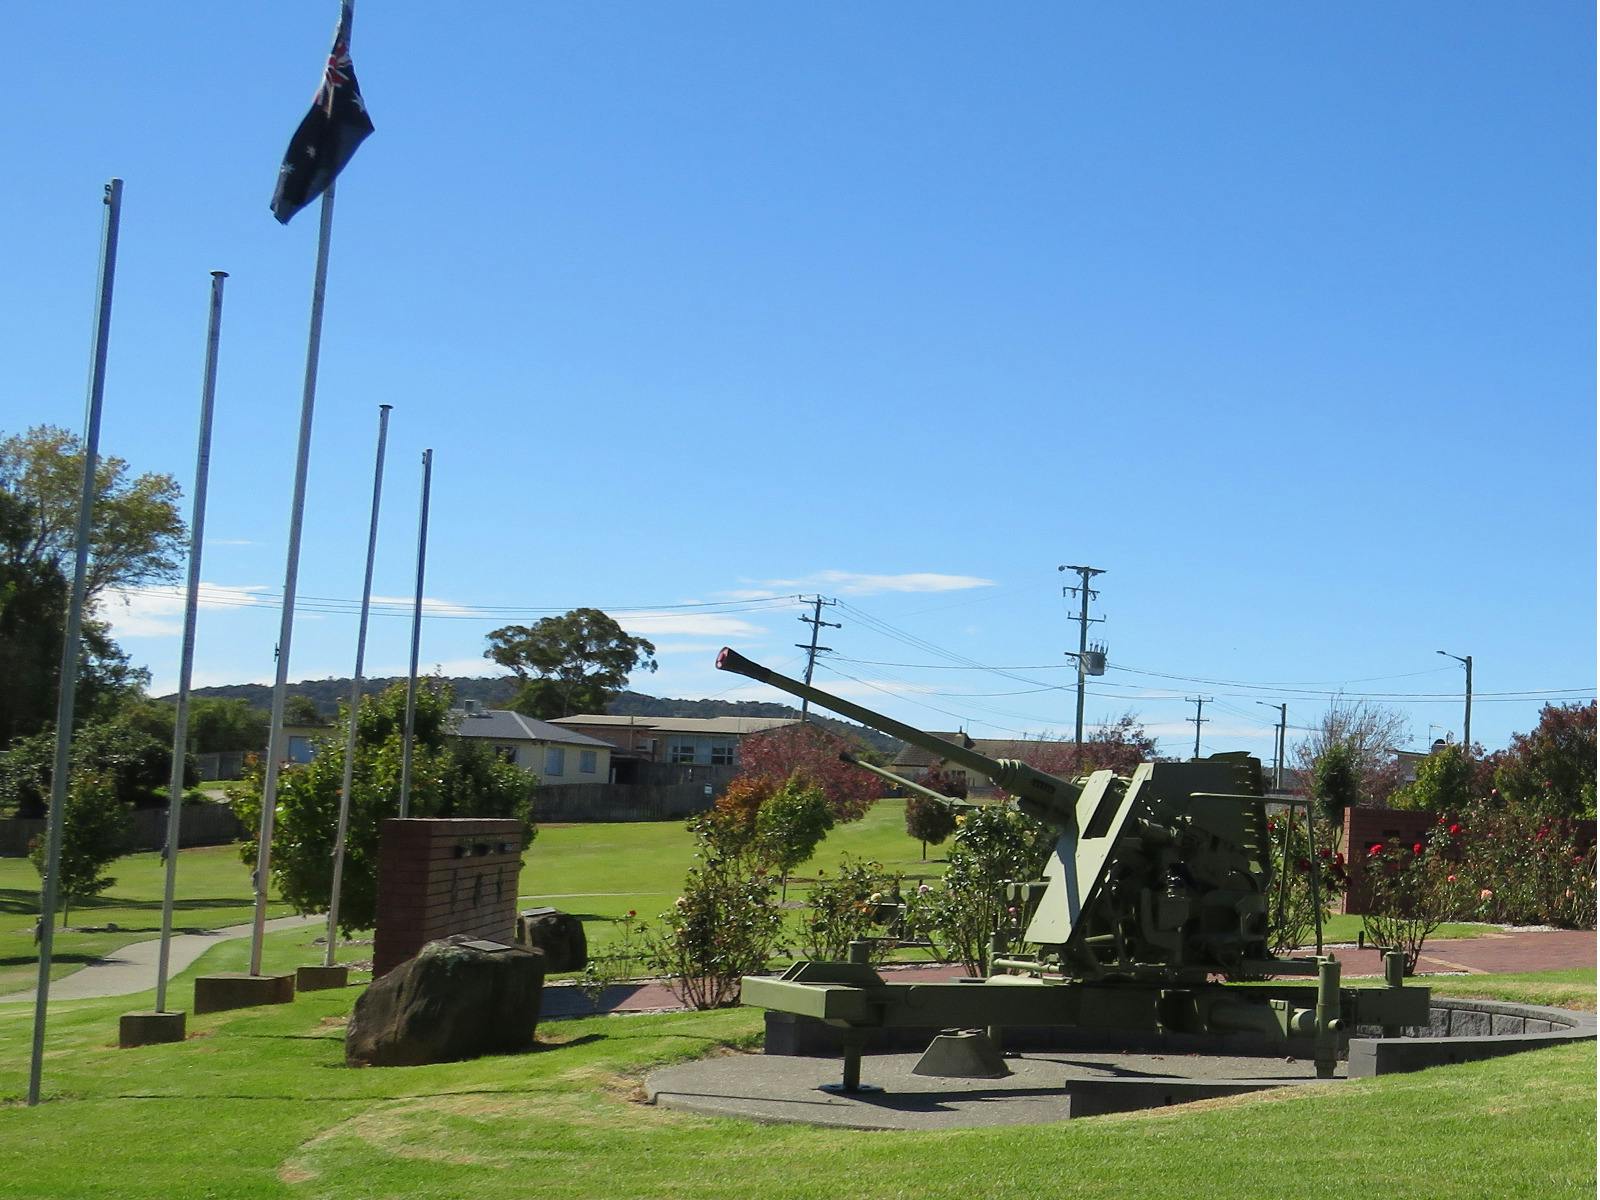 The Australian flag flys above one othe Bofors guns